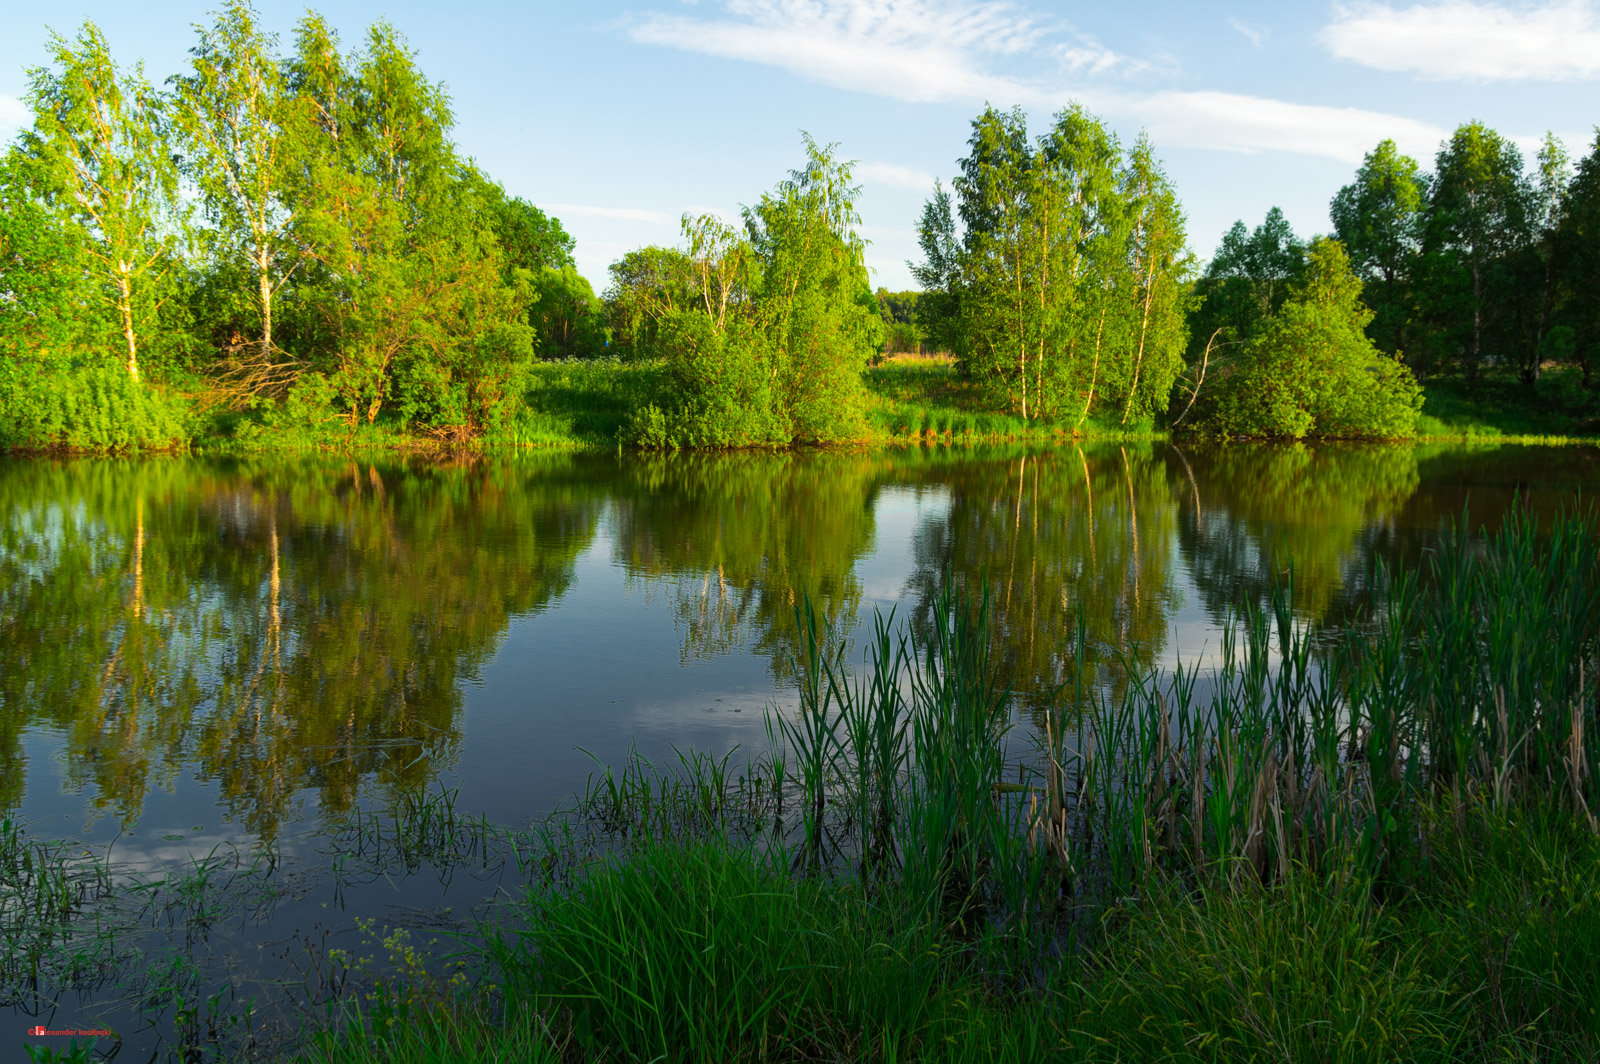 Пруд в Подмосковье / Pond in Moscow region